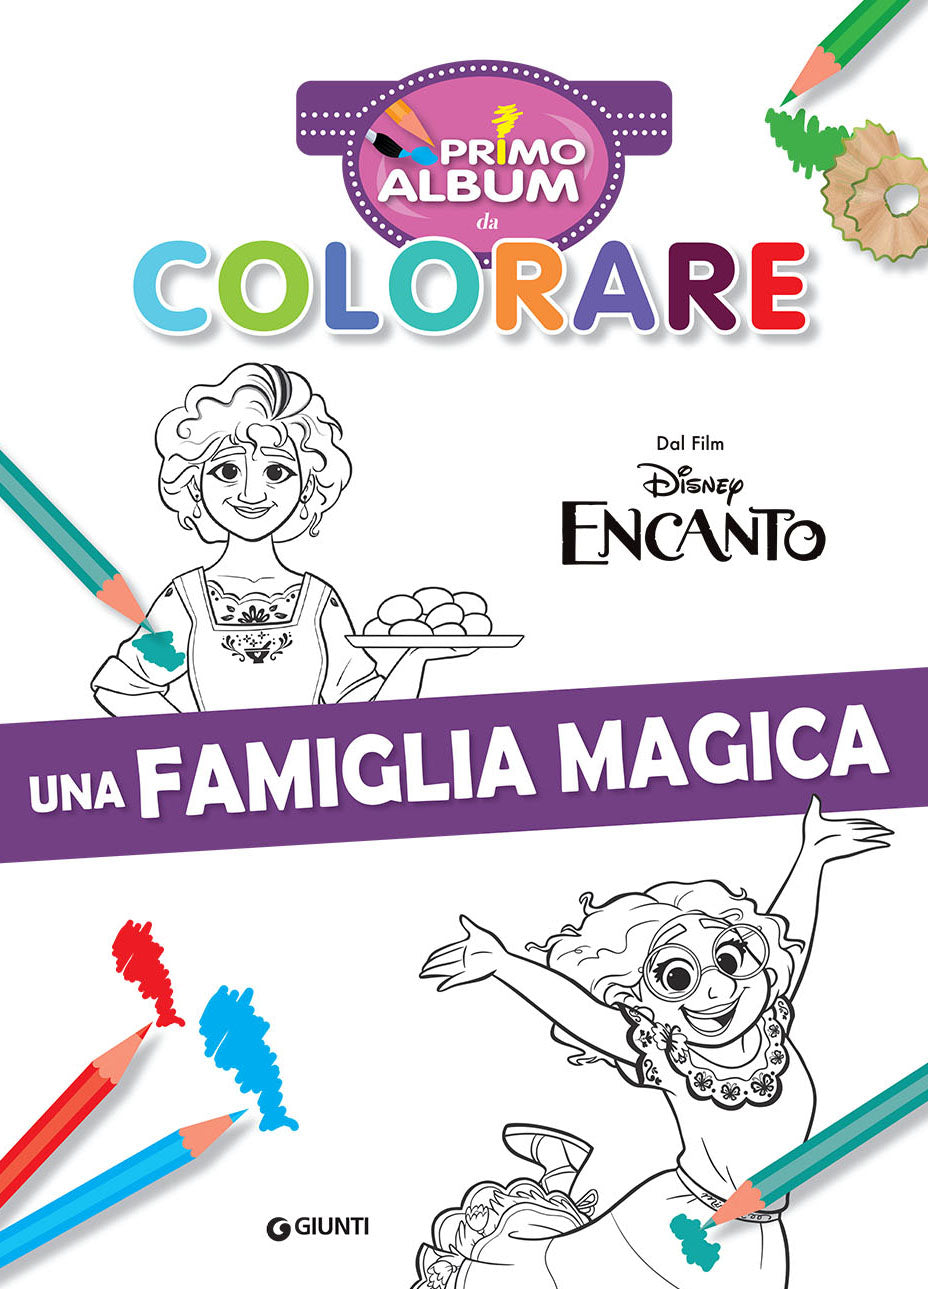 Disney Encanto Primo album da colorare::Una famiglia magica